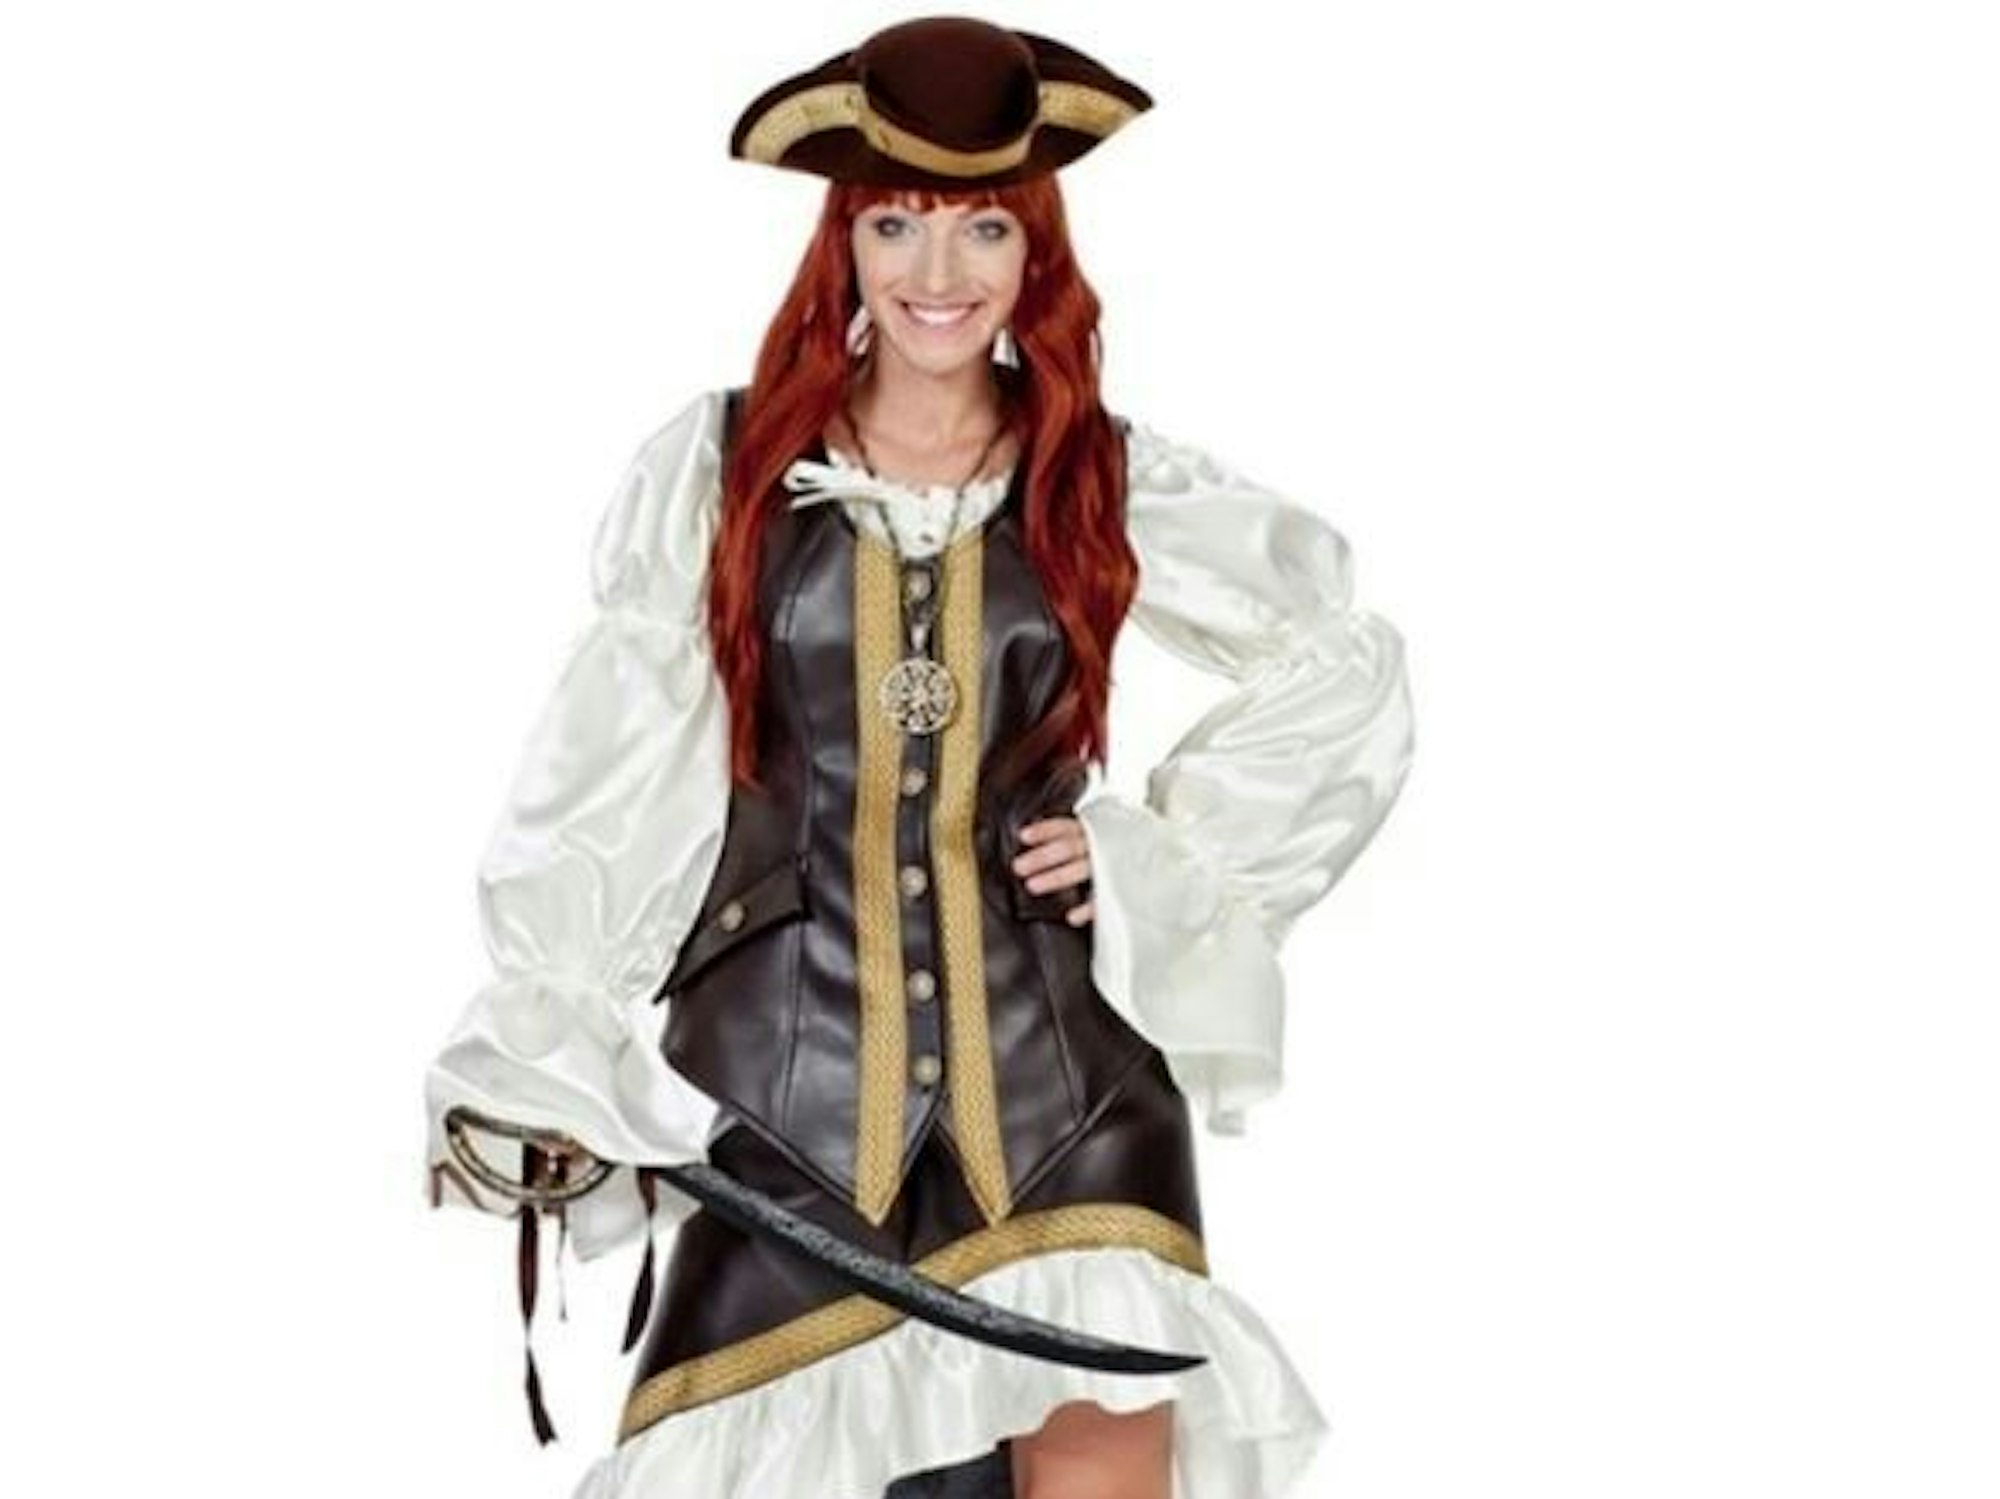 Eine Frau ist als Piratin verkleidet.